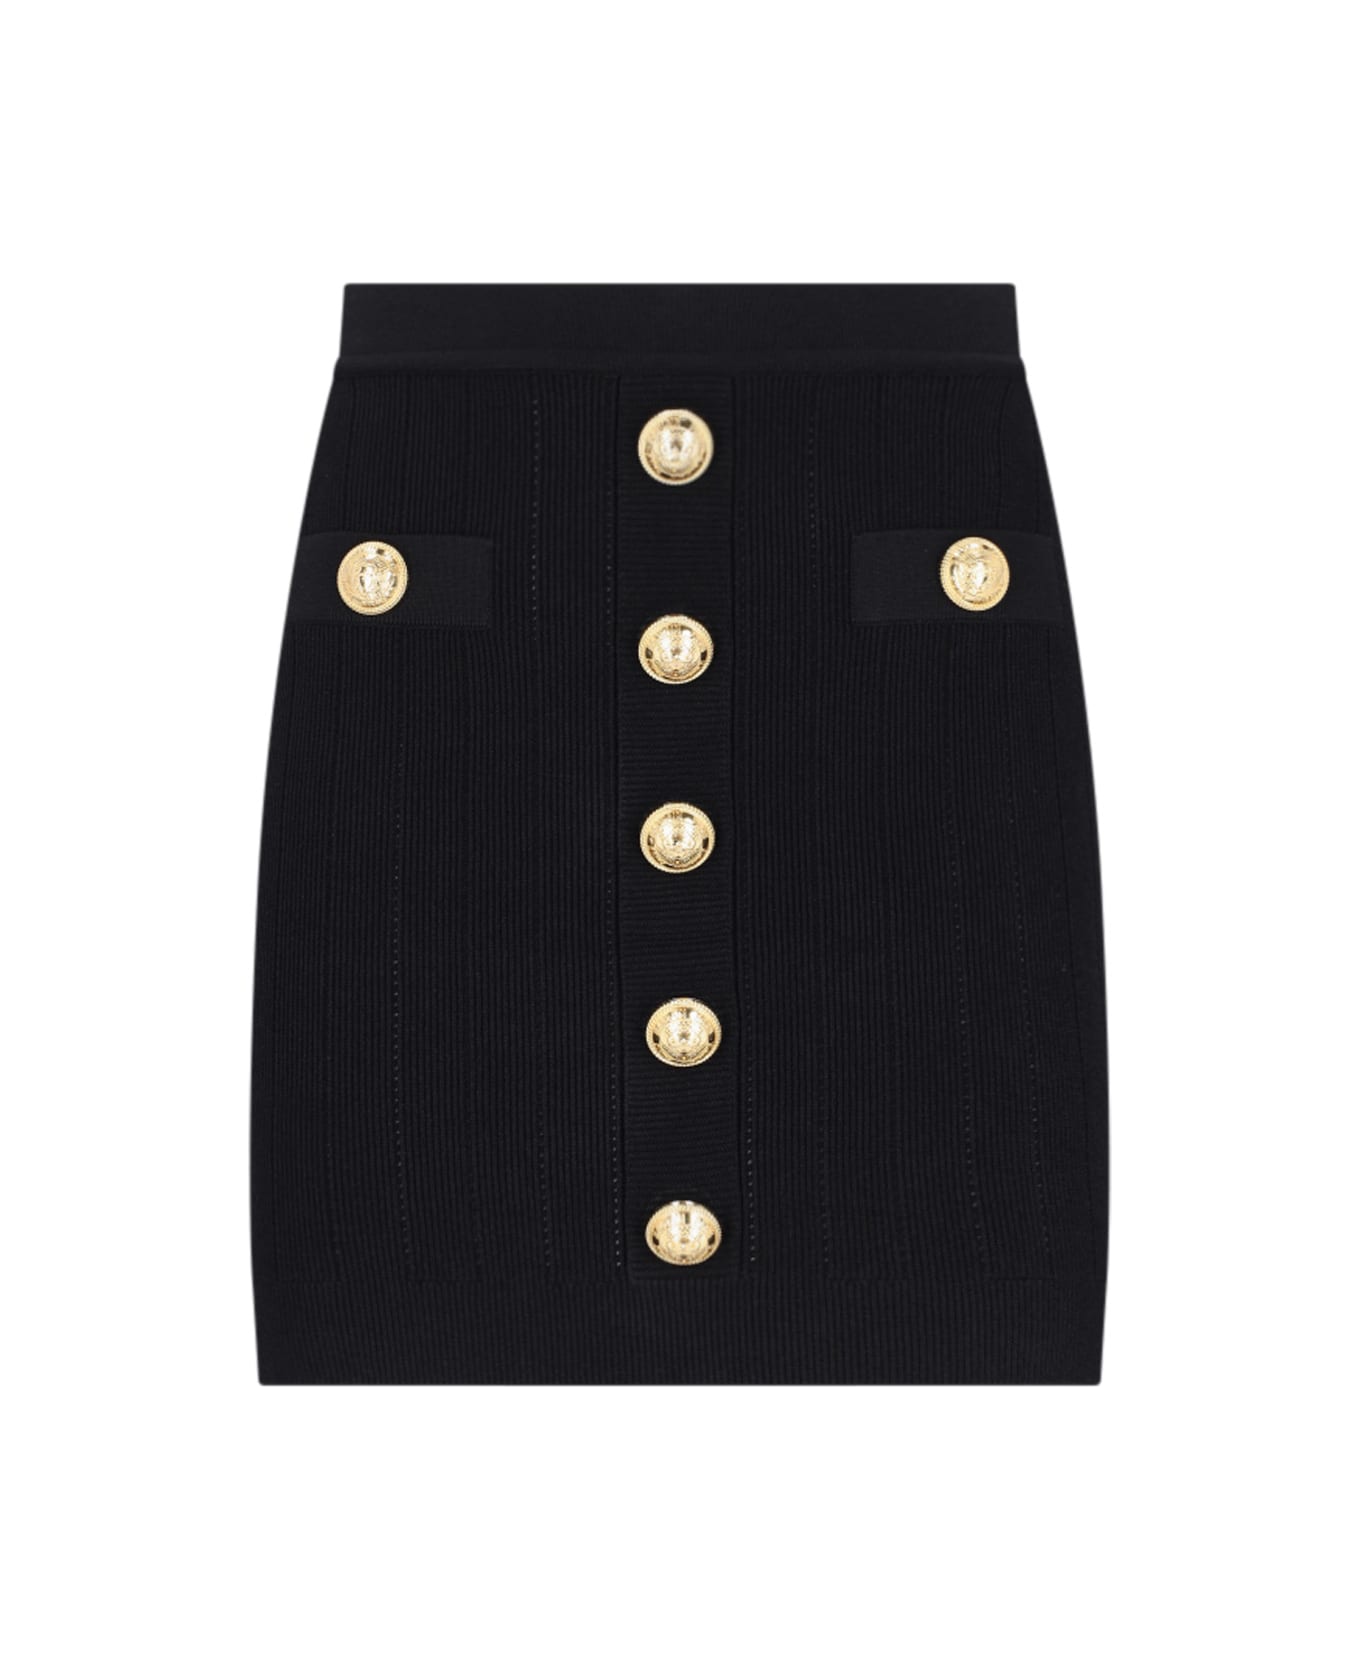 Balmain Knitted Mini Skirt - Black   スカート